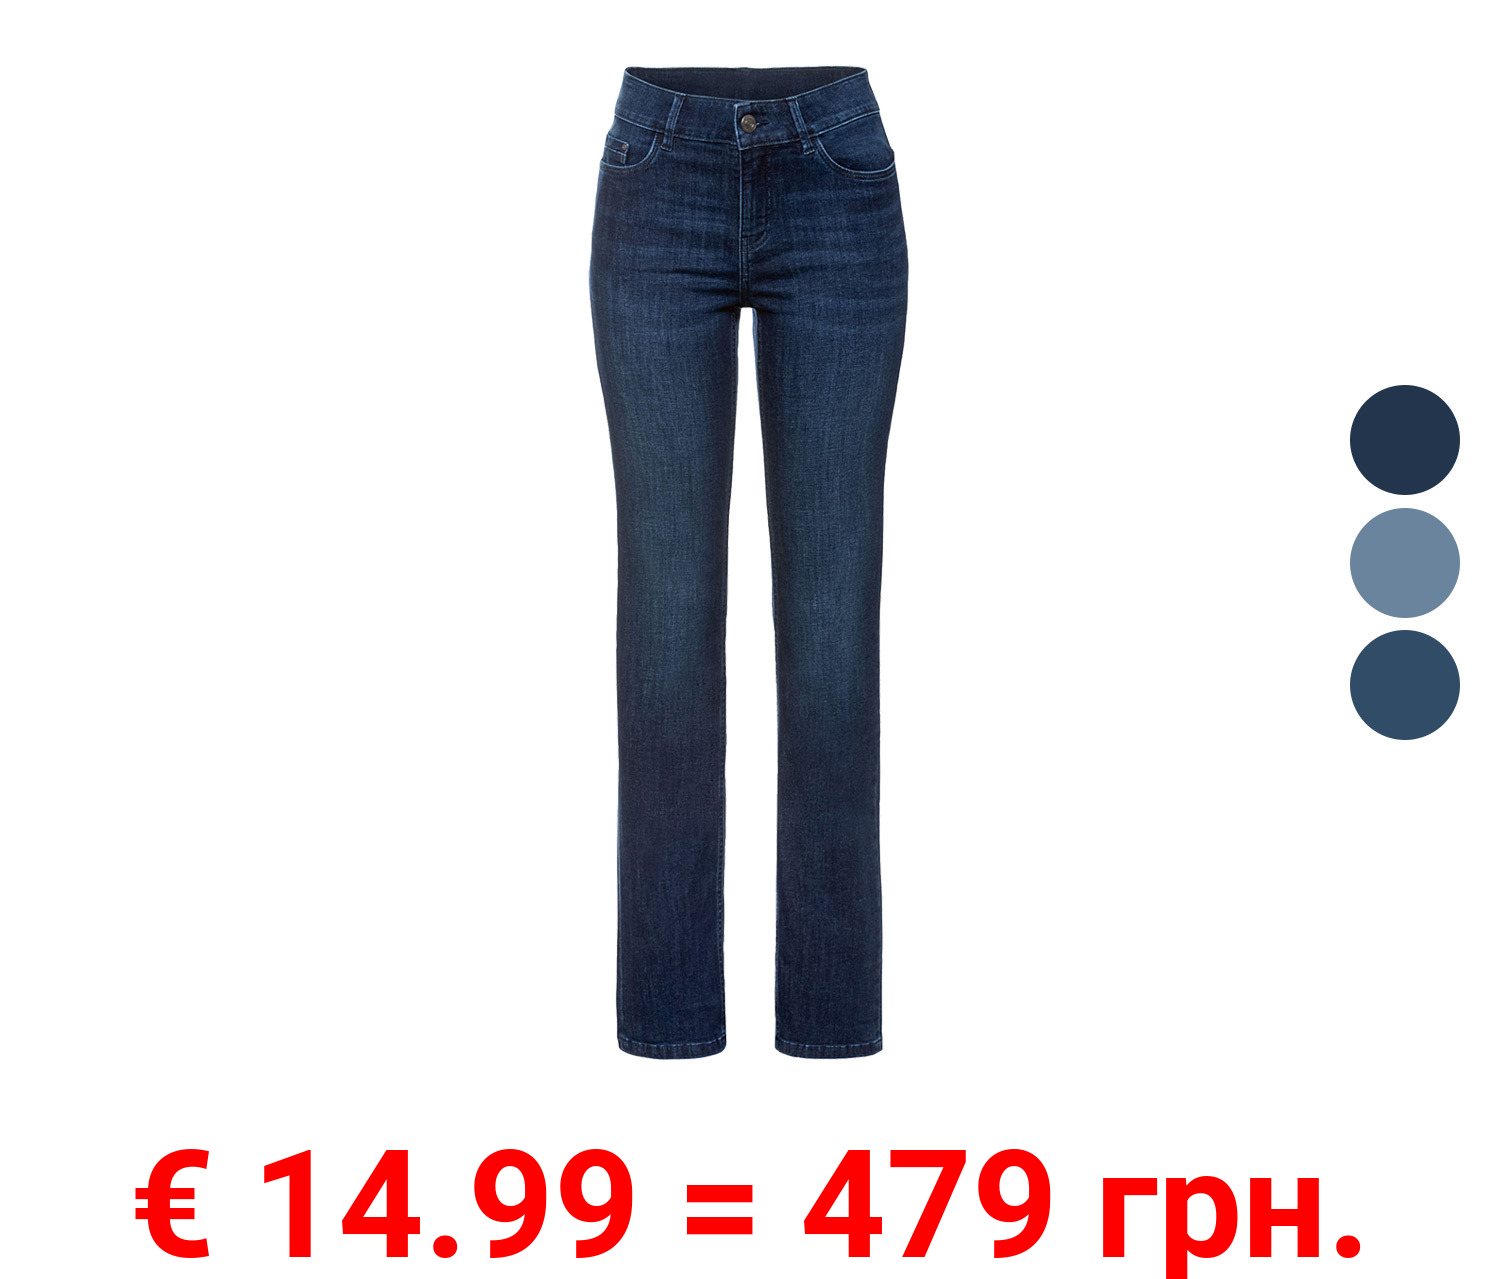 ESMARA® Damen Jeans, Straight Fit, mit hohem Baumwollanteil